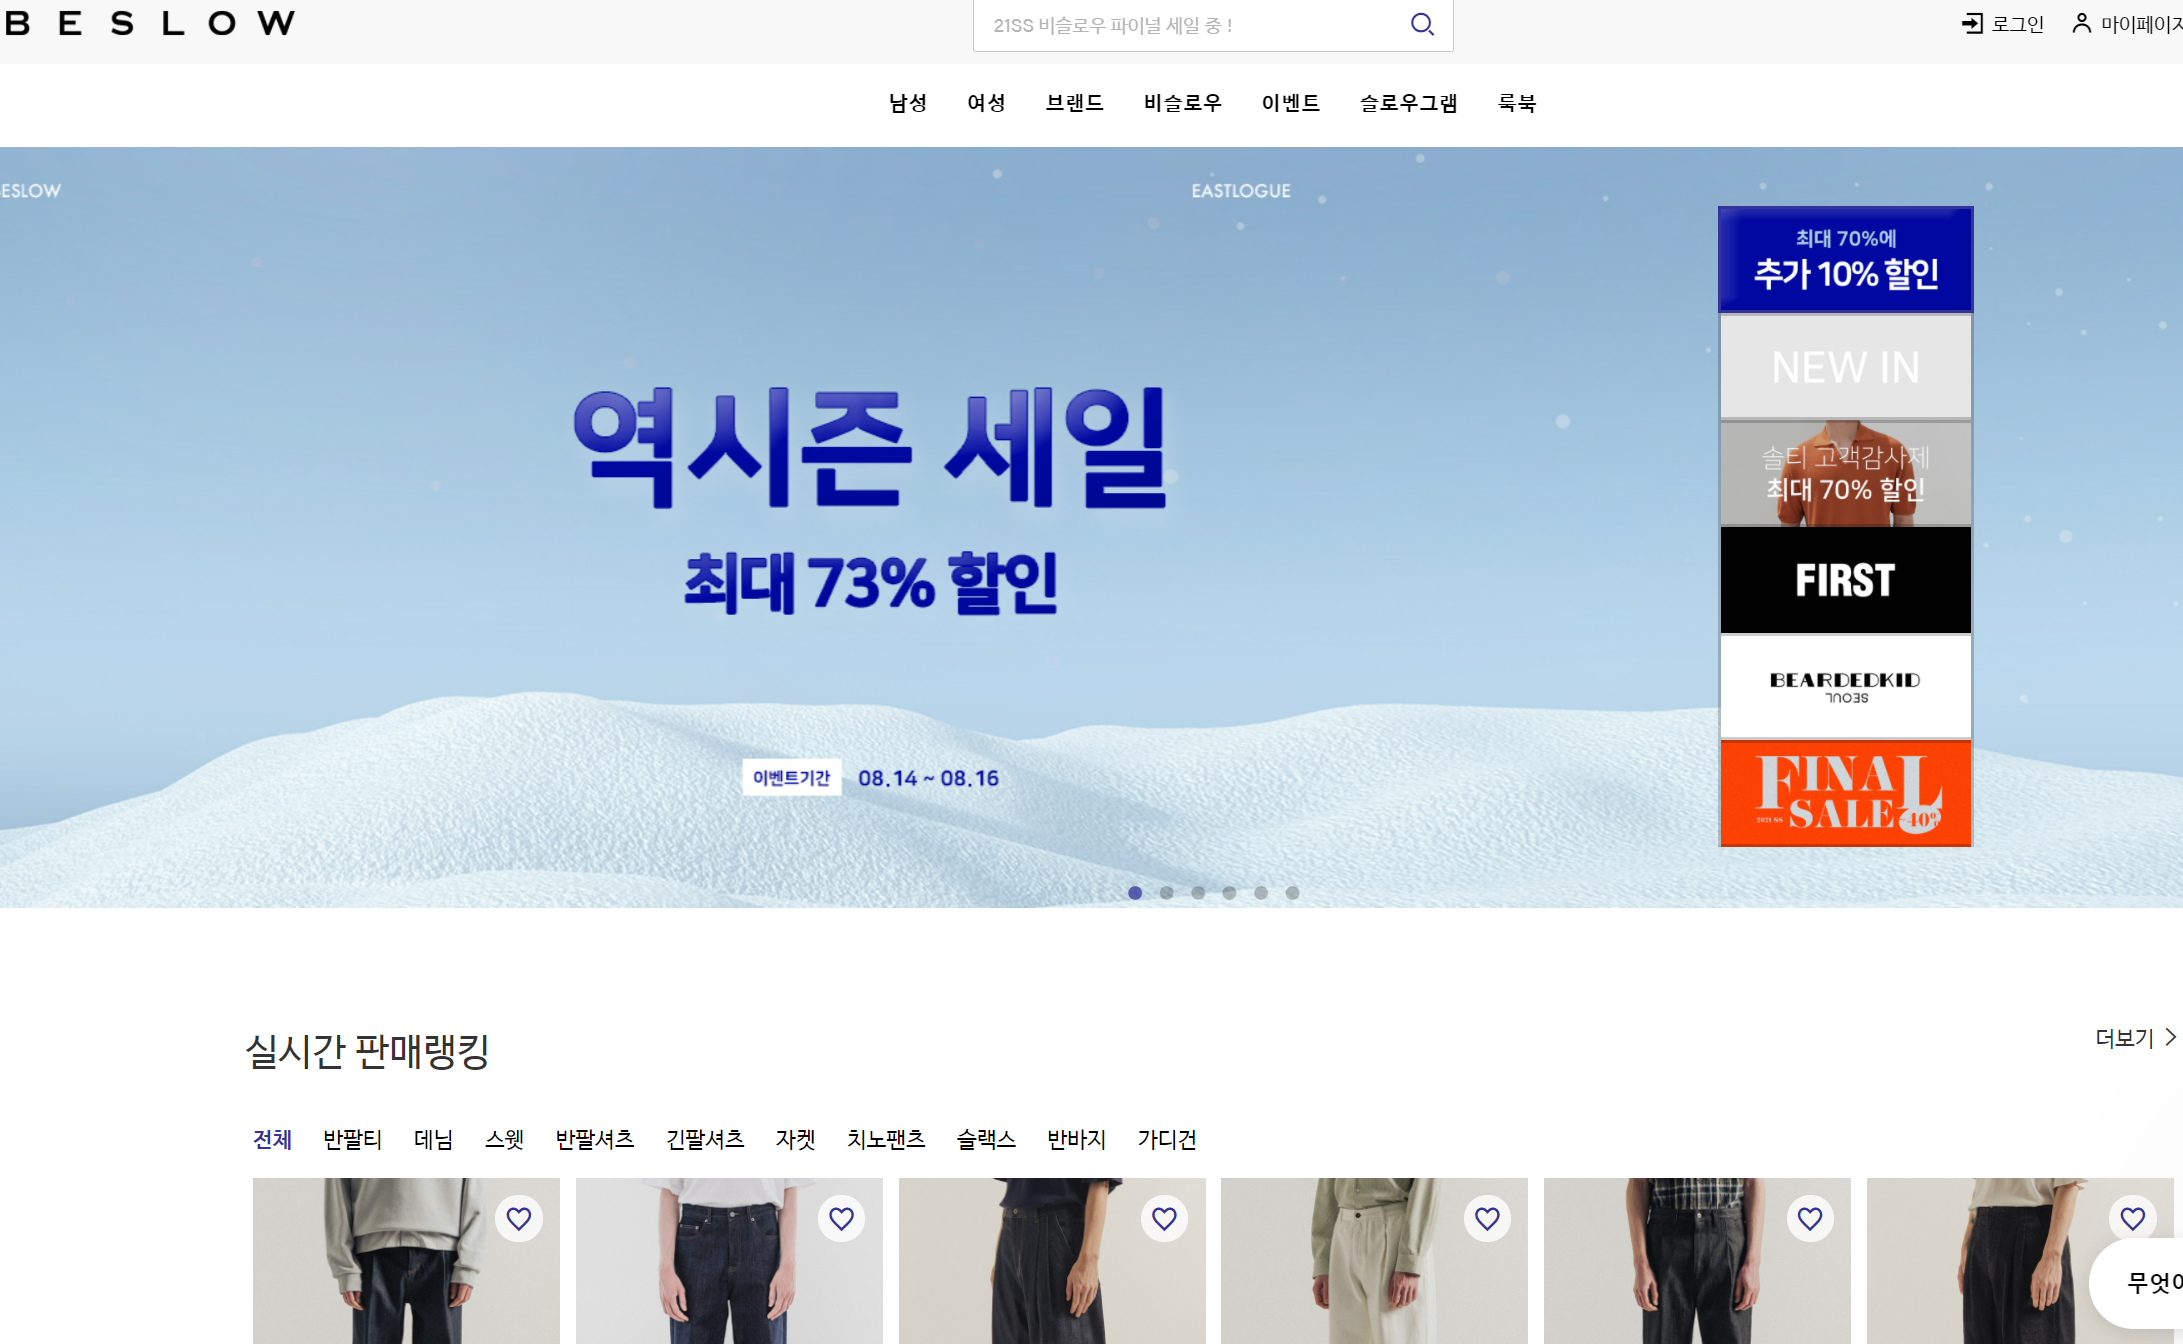 korea buying service - beslow